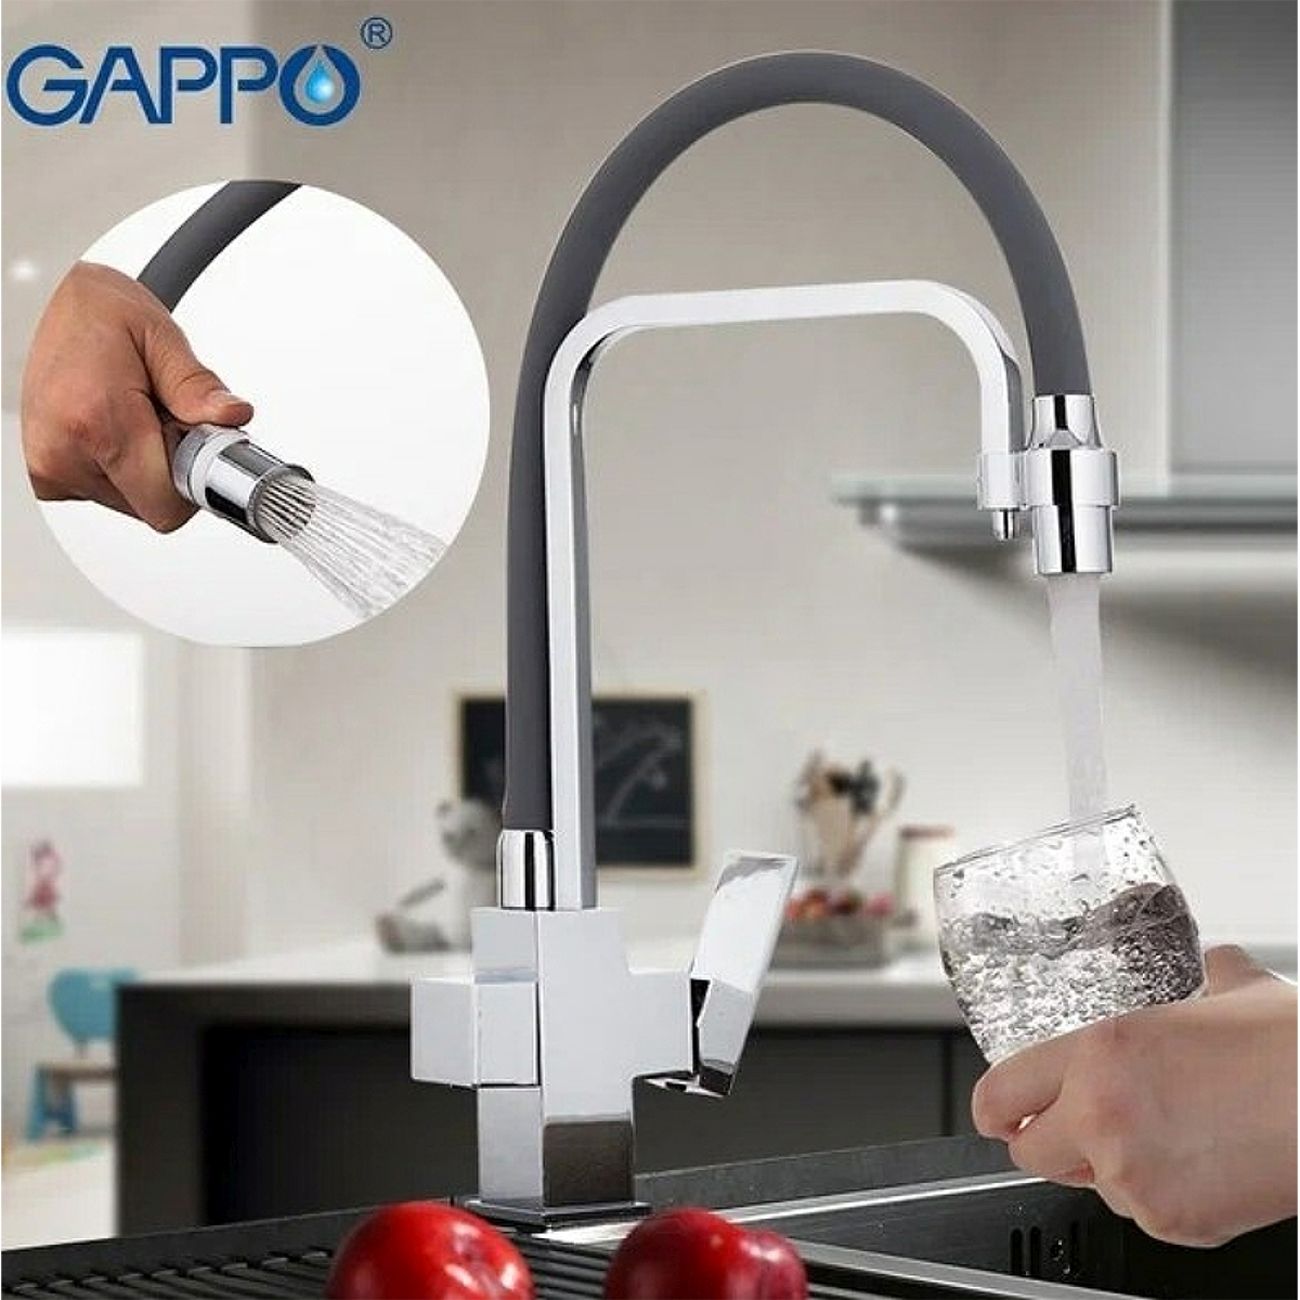 Купить смеситель gappo. Смеситель Gappo g4398-4. Смеситель Gappo g4398-1. Смеситель Gappo кухня g4398 сатин. Кухонный смеситель Gappo g4398.